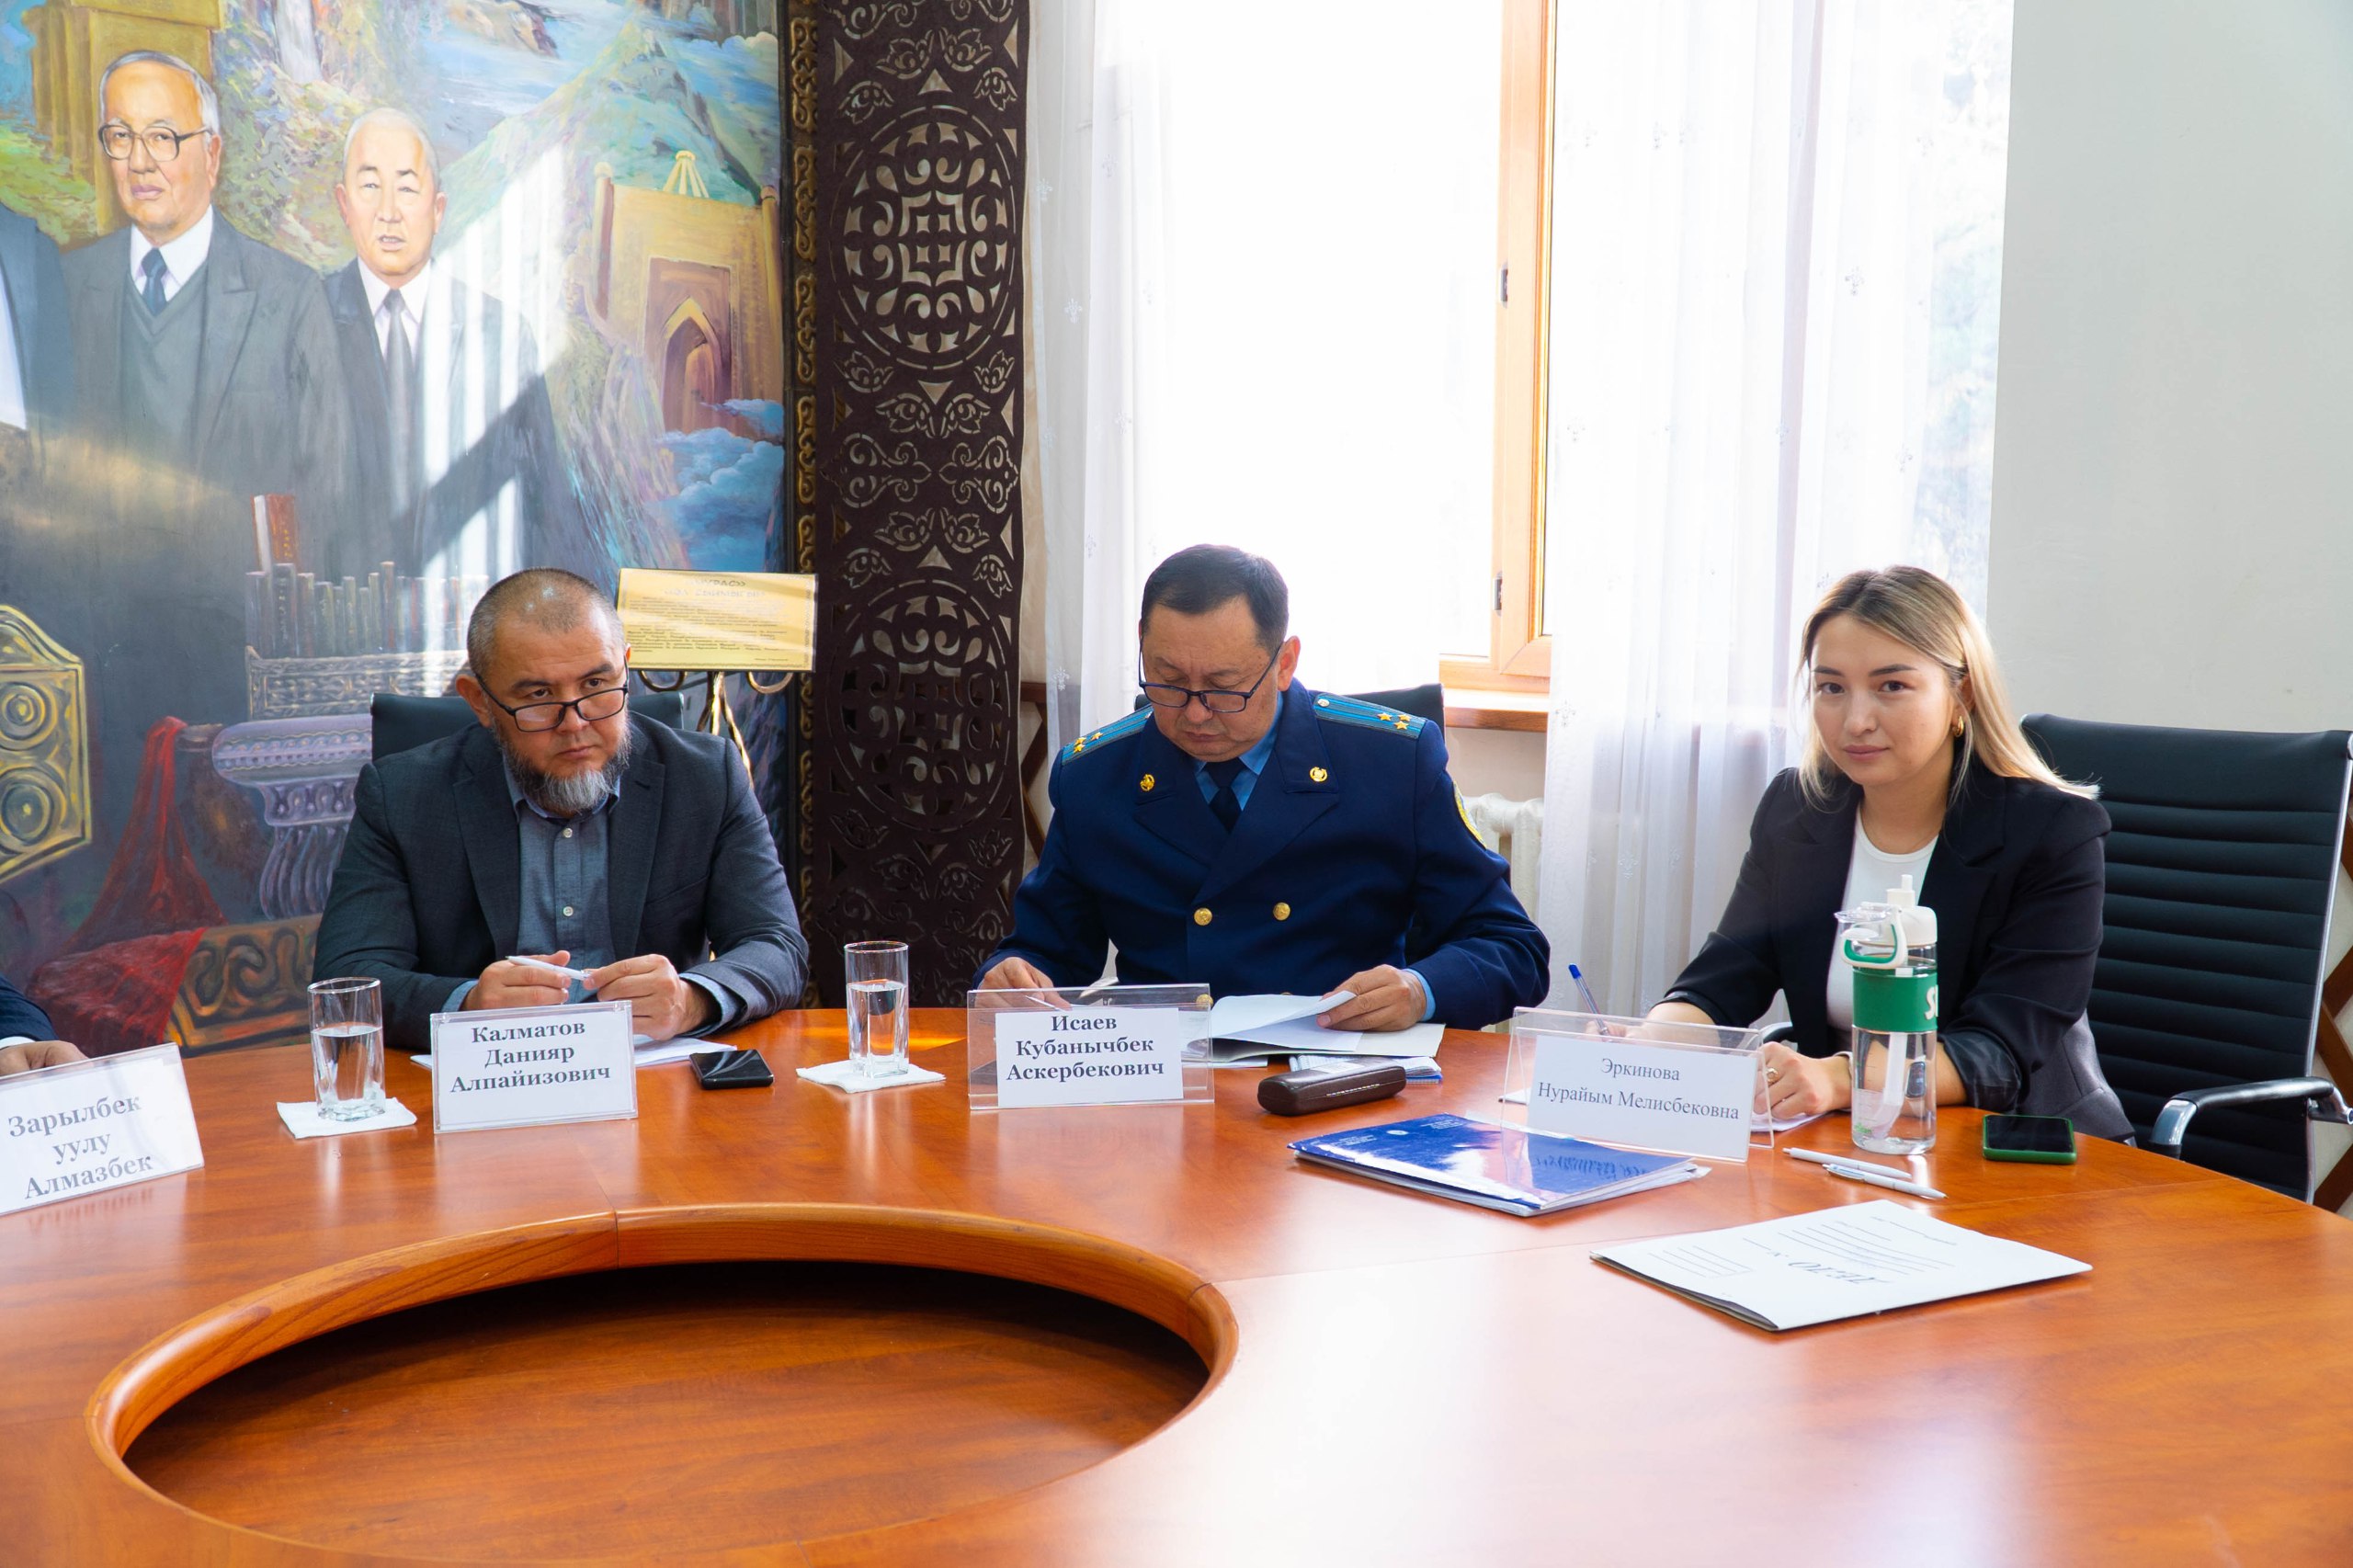 Министерство юстиции Кыргызской Республики провел третий этап открытого конкурса (собеседование) для включения во внутренний резерв кадров 